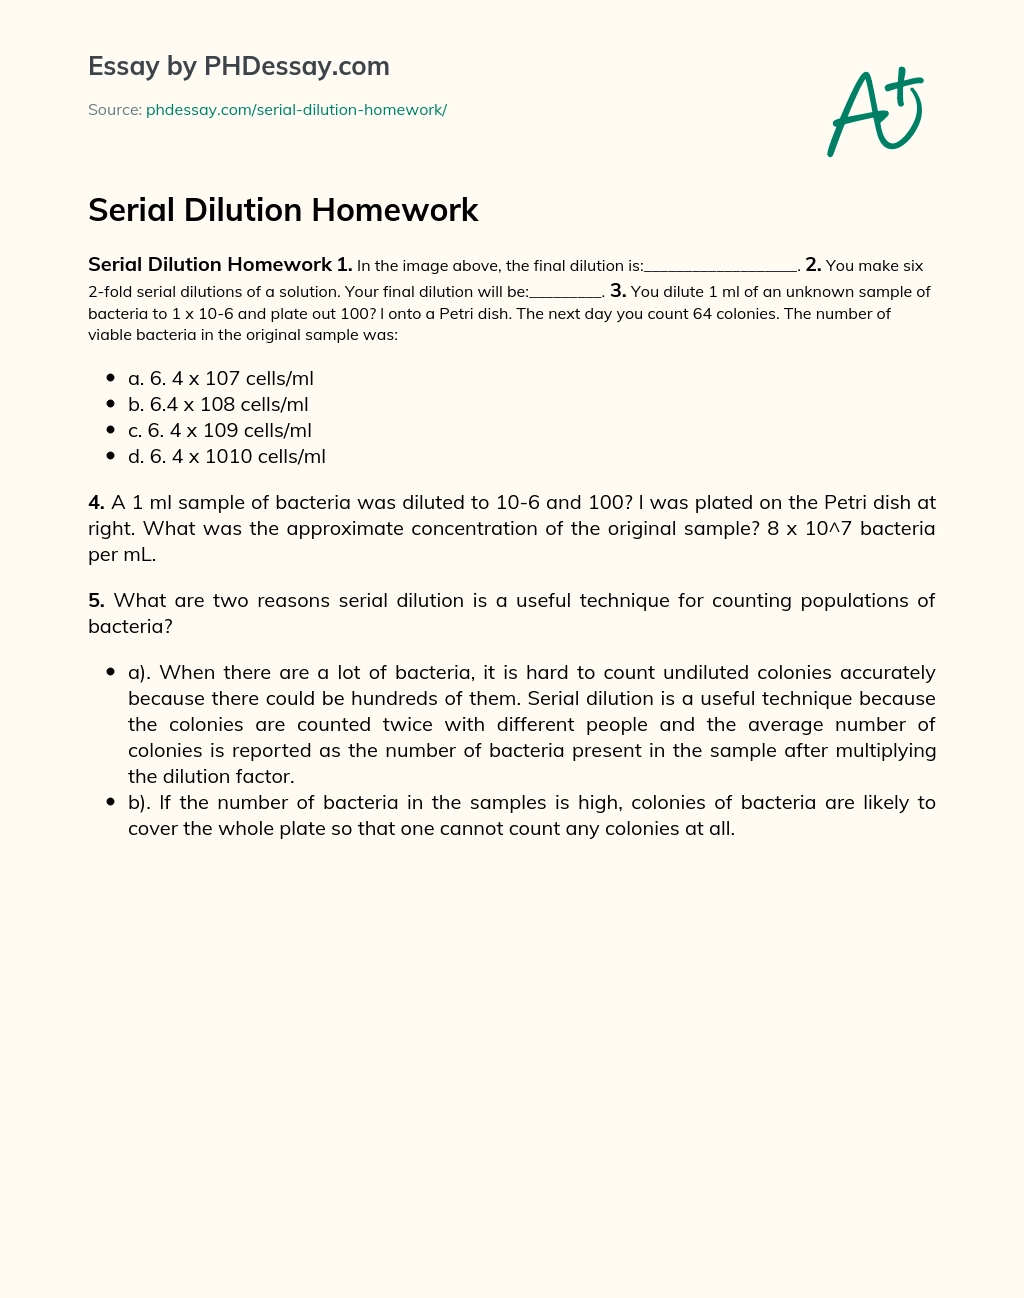 Serial Dilution Homework essay